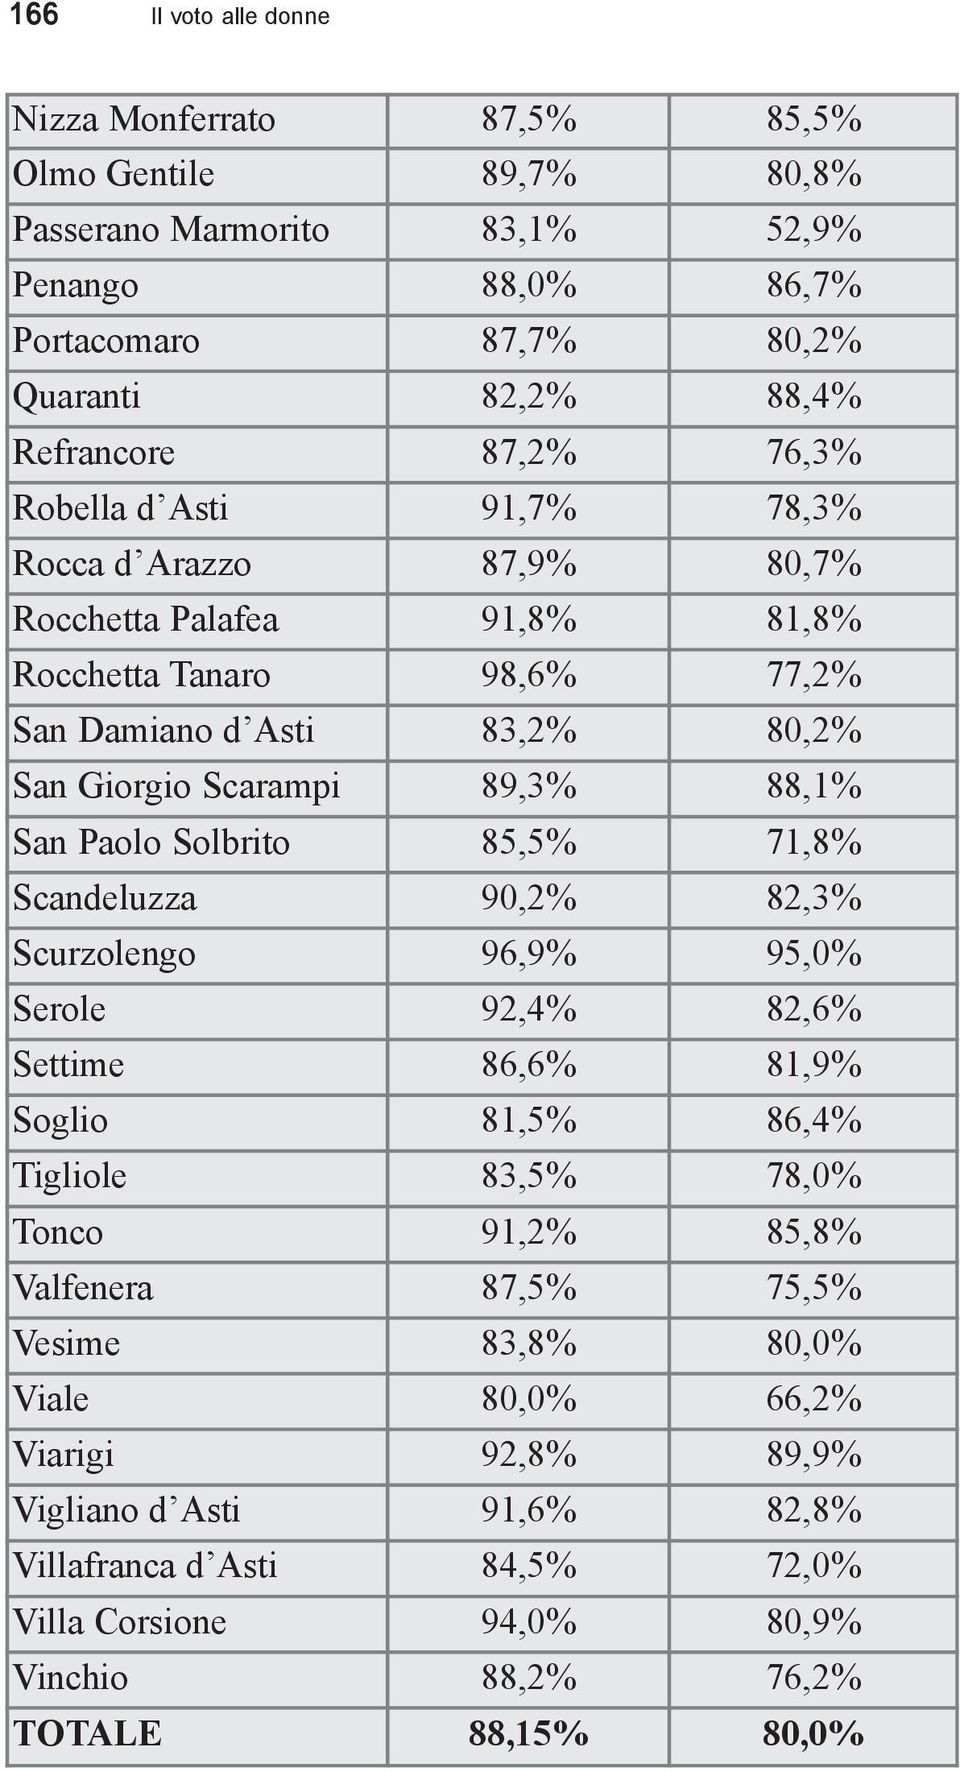 San Paolo Solbrito 85,5% 71,8% Scandeluzza 90,2% 82,3% Scurzolengo 96,9% 95,0% Serole 92,4% 82,6% Settime 86,6% 81,9% Soglio 81,5% 86,4% Tigliole 83,5% 78,0% Tonco 91,2% 85,8% Valfenera